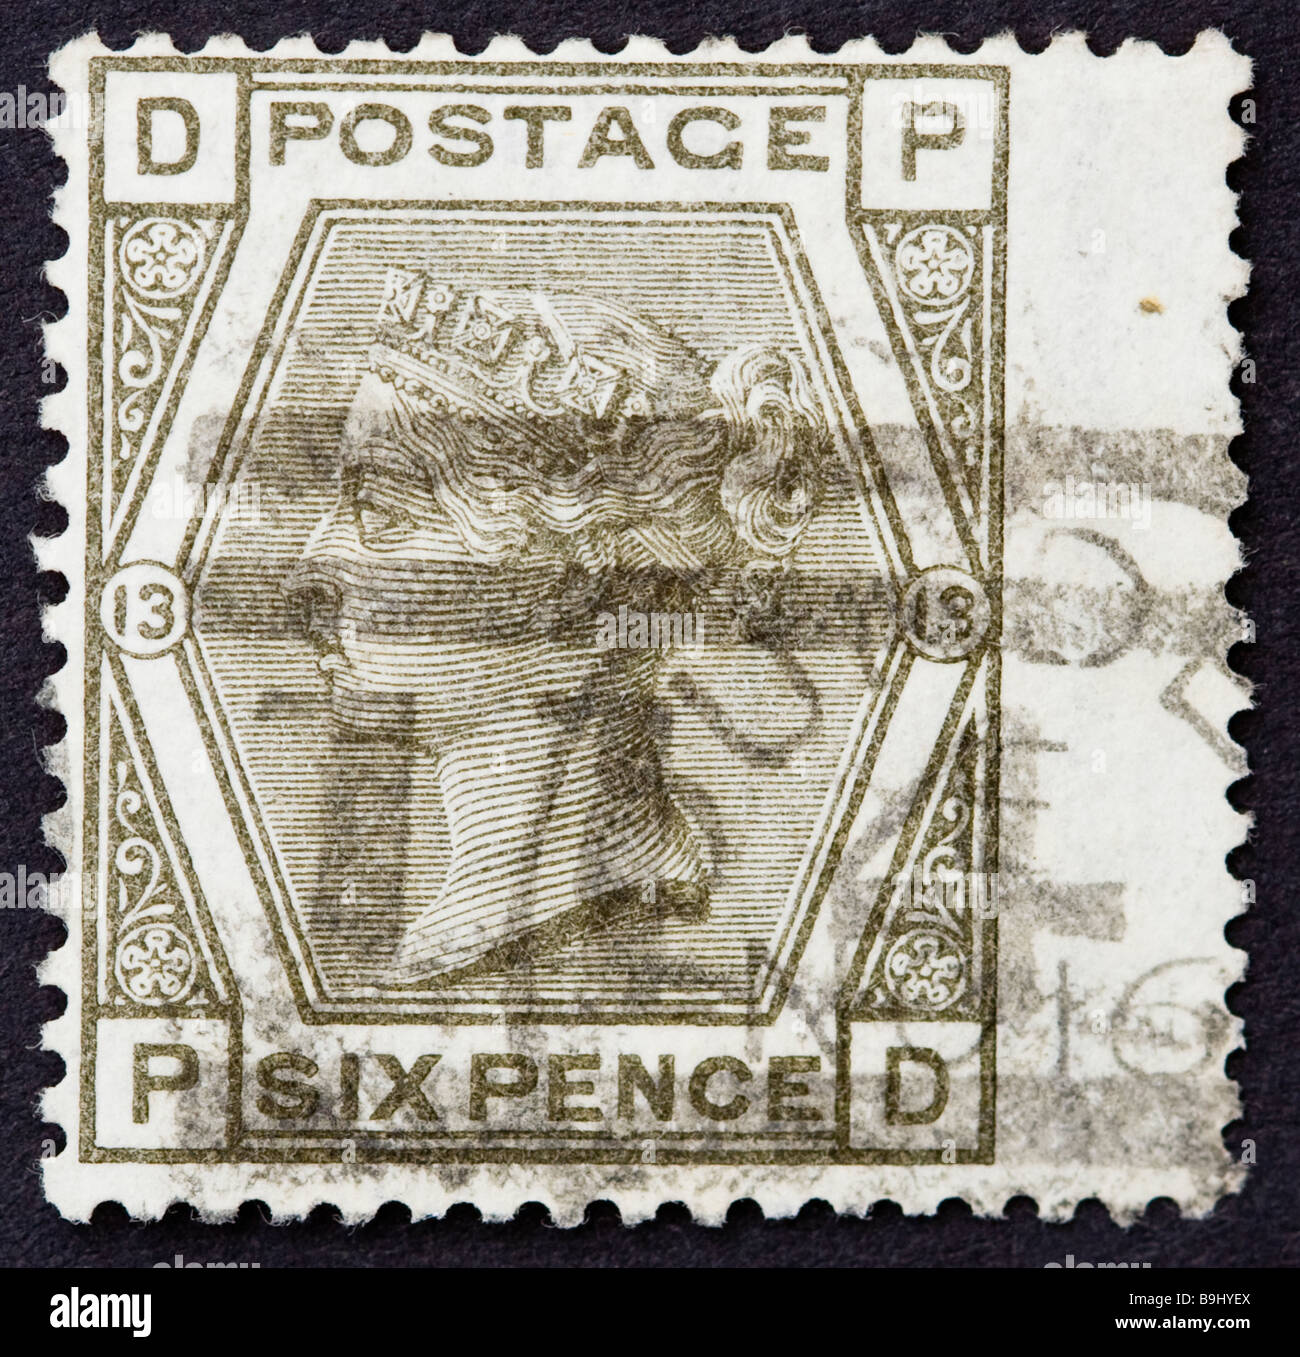 Nahaufnahme eines 6d grauen viktorianischen britischen Briefmarkens auf schwarzem Hintergrund. Verwendet mit Poststempel, Platte 13 SG147. Stockfoto